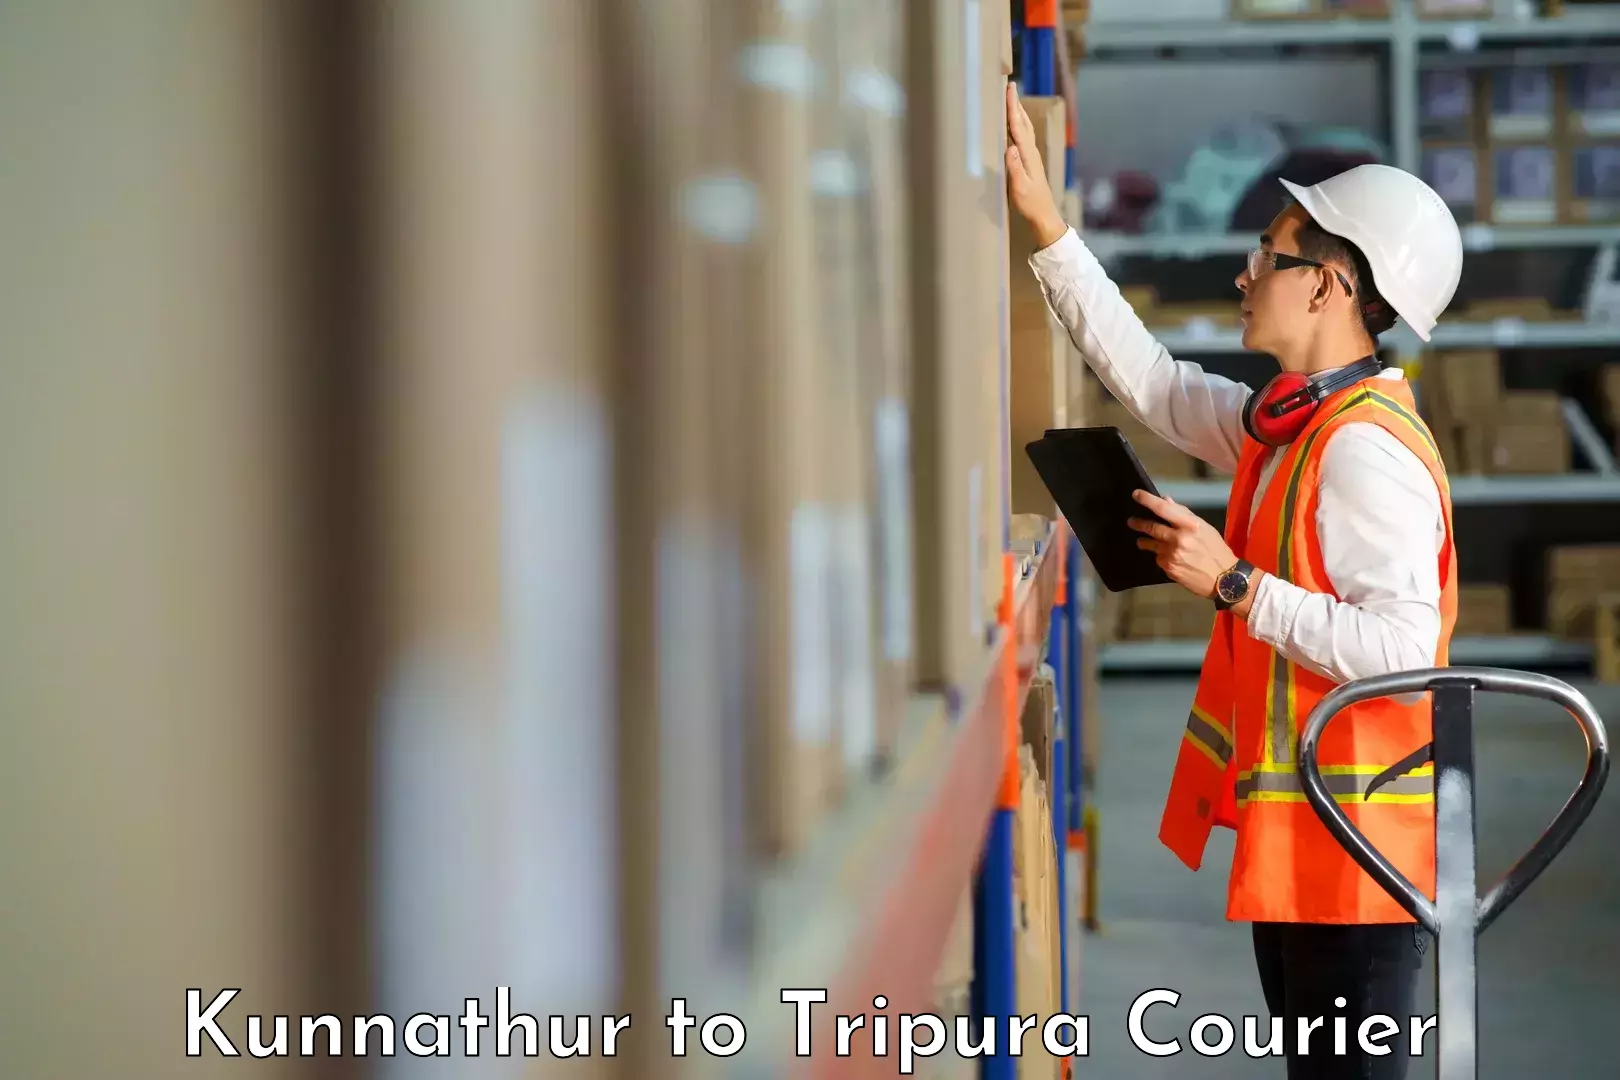 Courier service comparison Kunnathur to Amarpur